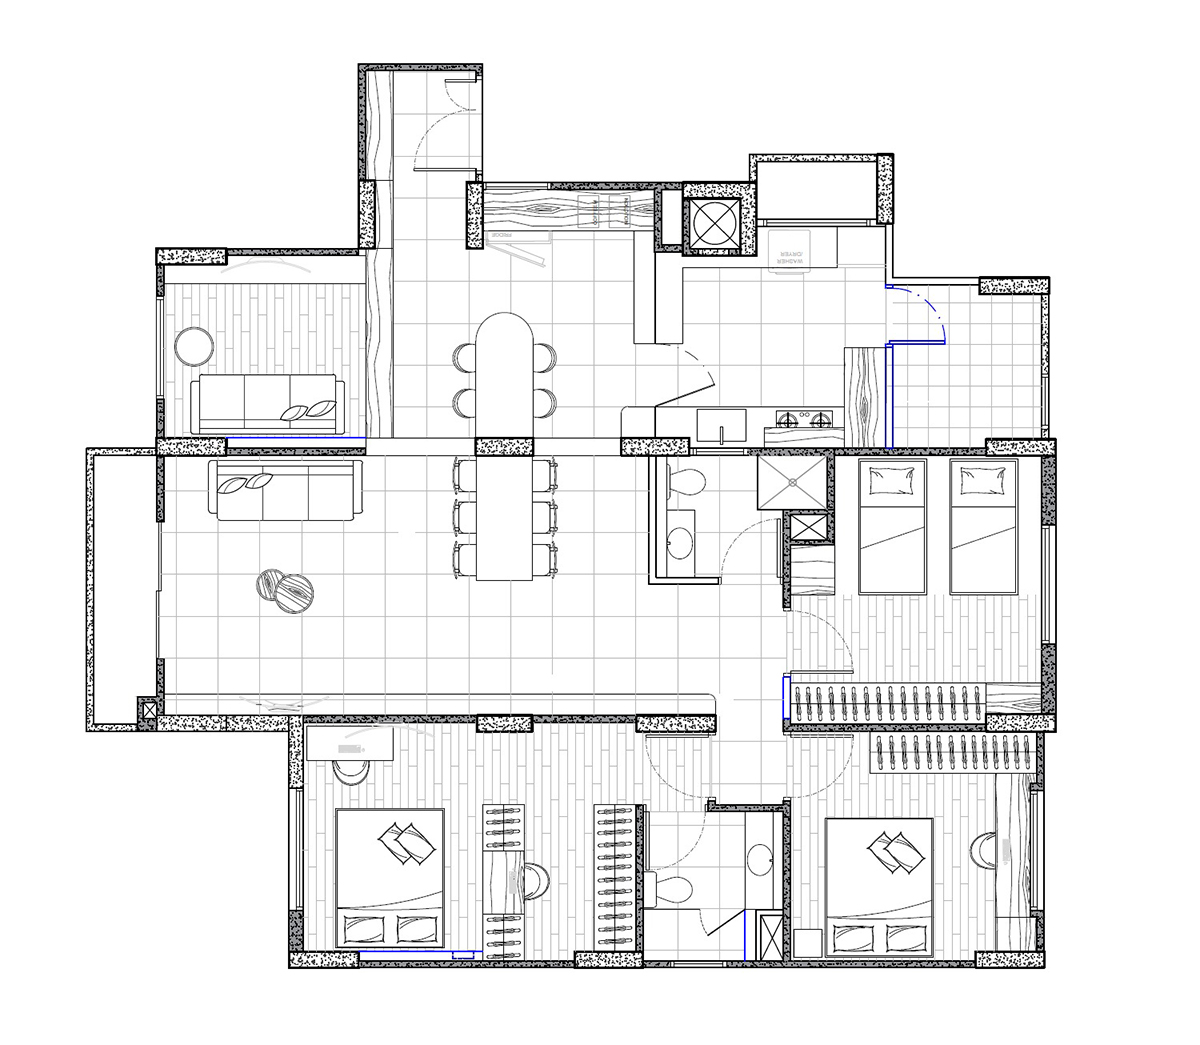 squarerooms met interior home renovation condominium unit condo floor plan layout